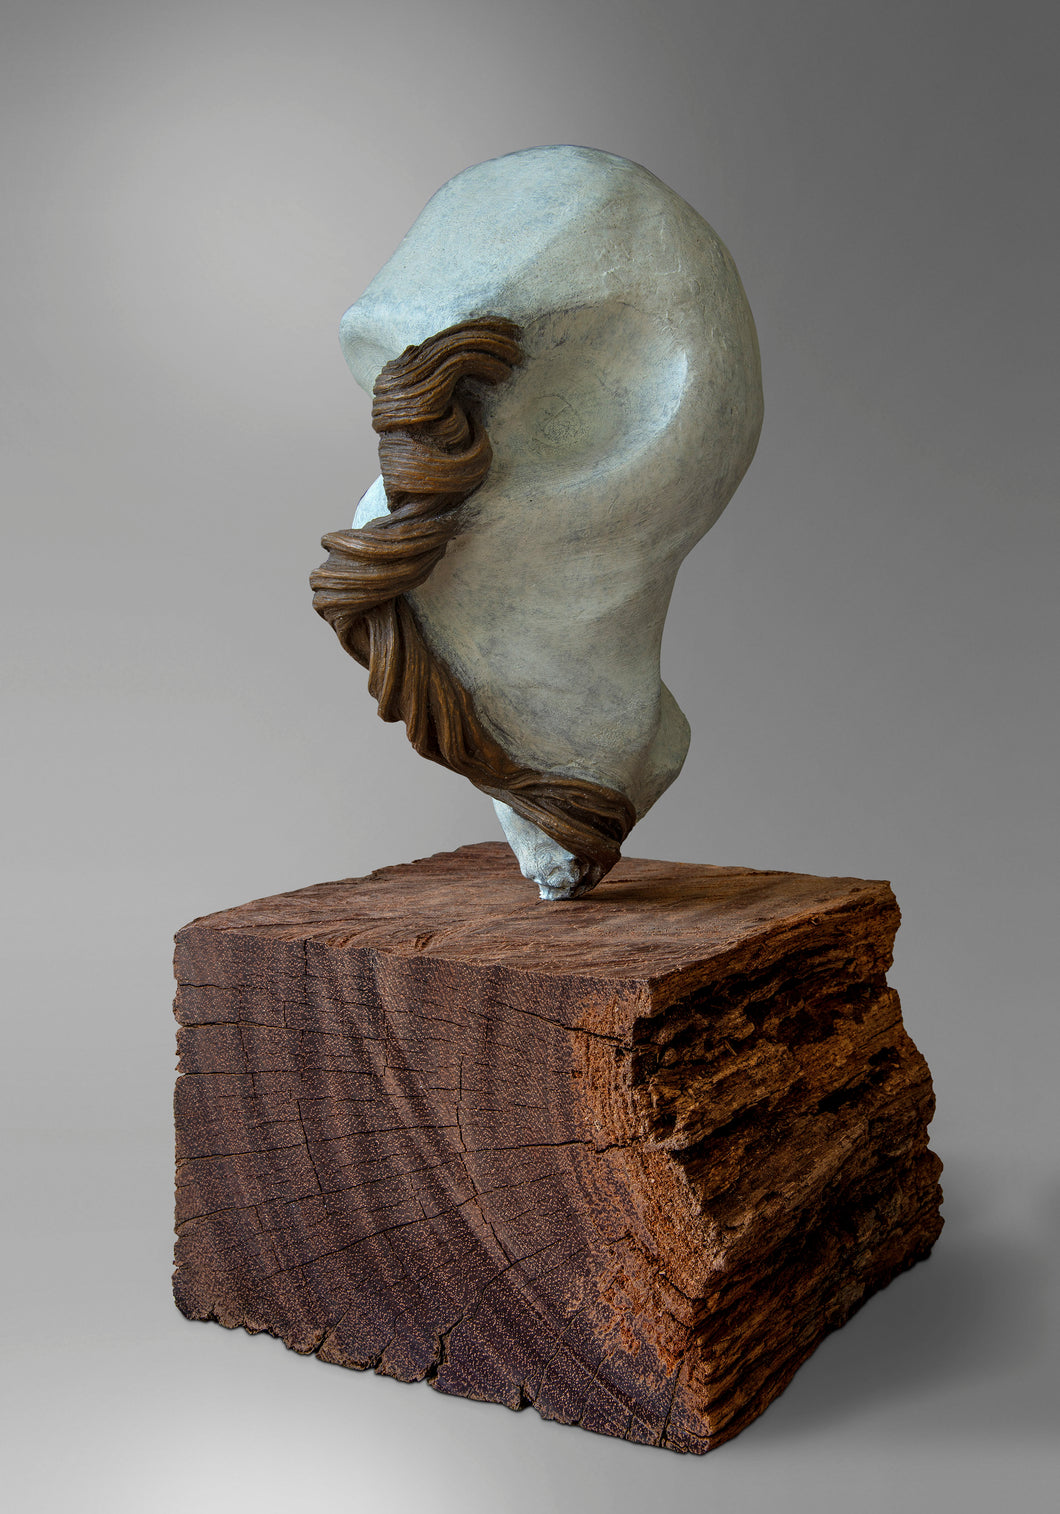 Catherine François, Tête vieille branche, bronze, Ed. 1/8+ 4EA, 40 x 40 x 20 cm, 2021